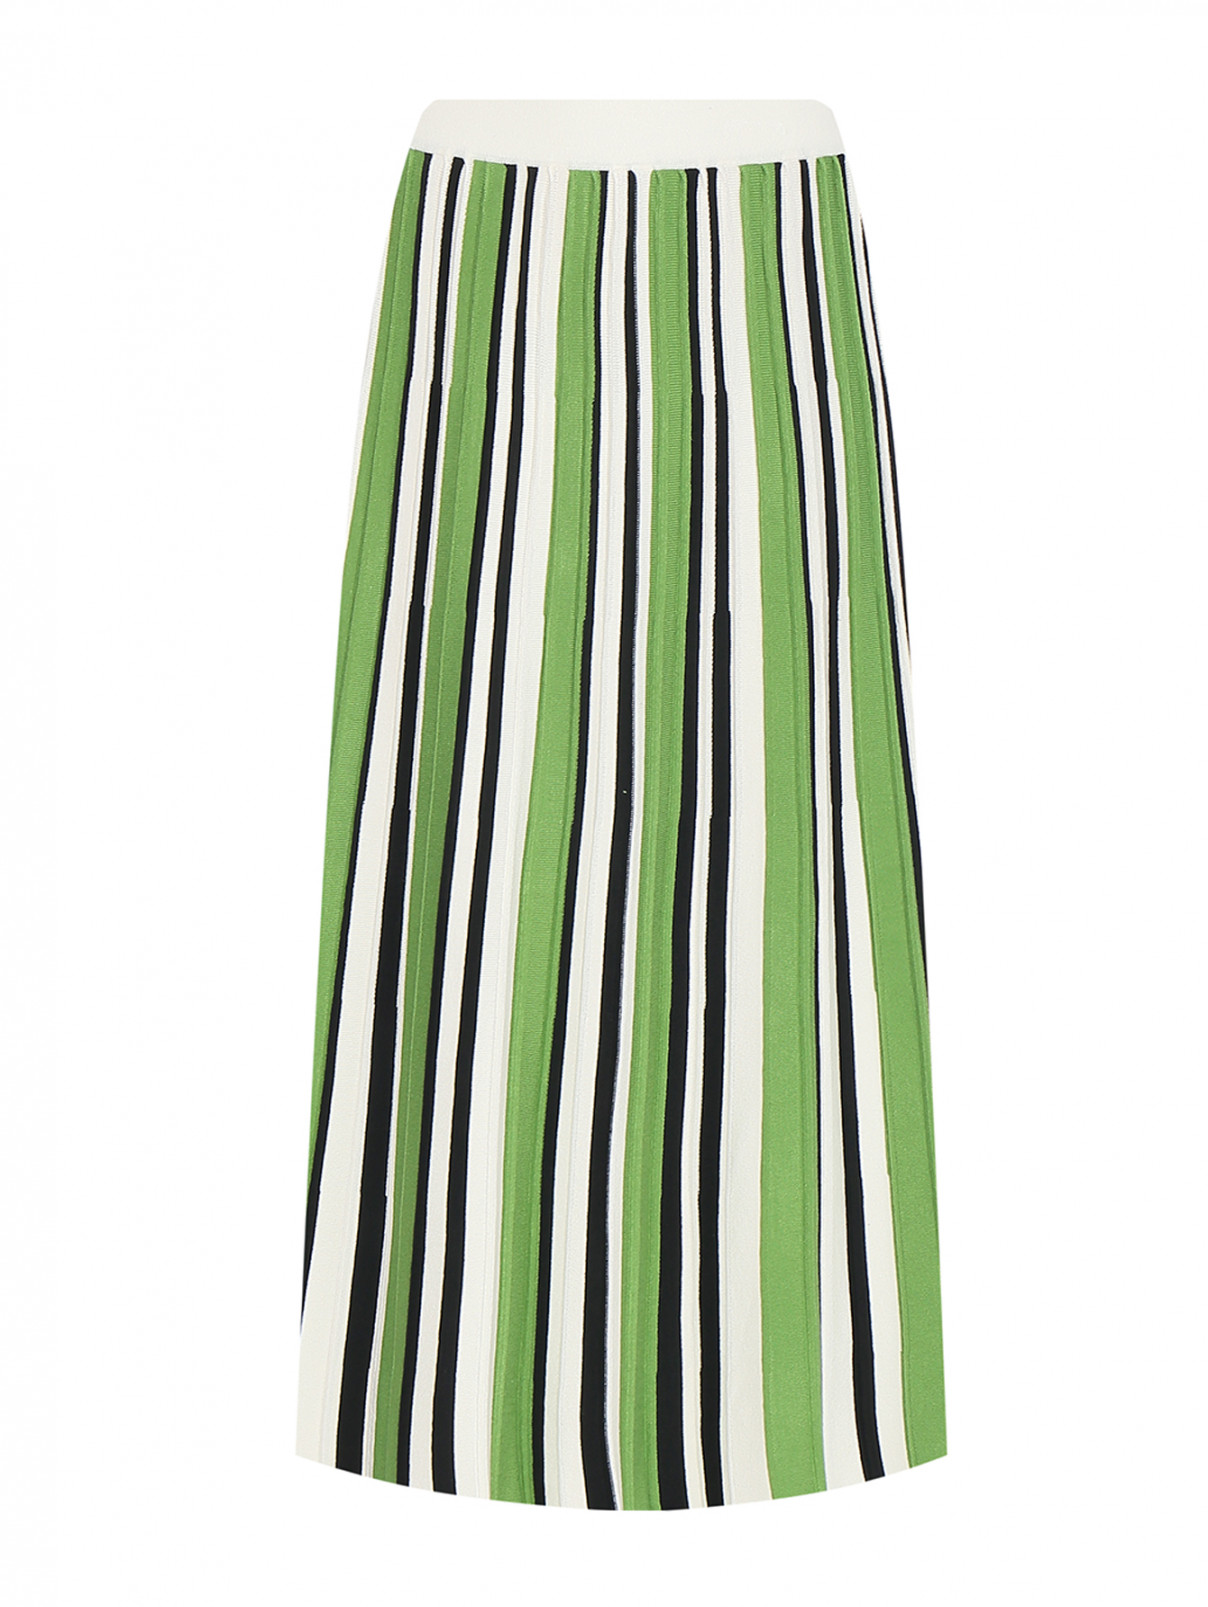 Плиссированная юбка-миди с узором полоска Weekend Max Mara  –  Общий вид  – Цвет:  Зеленый